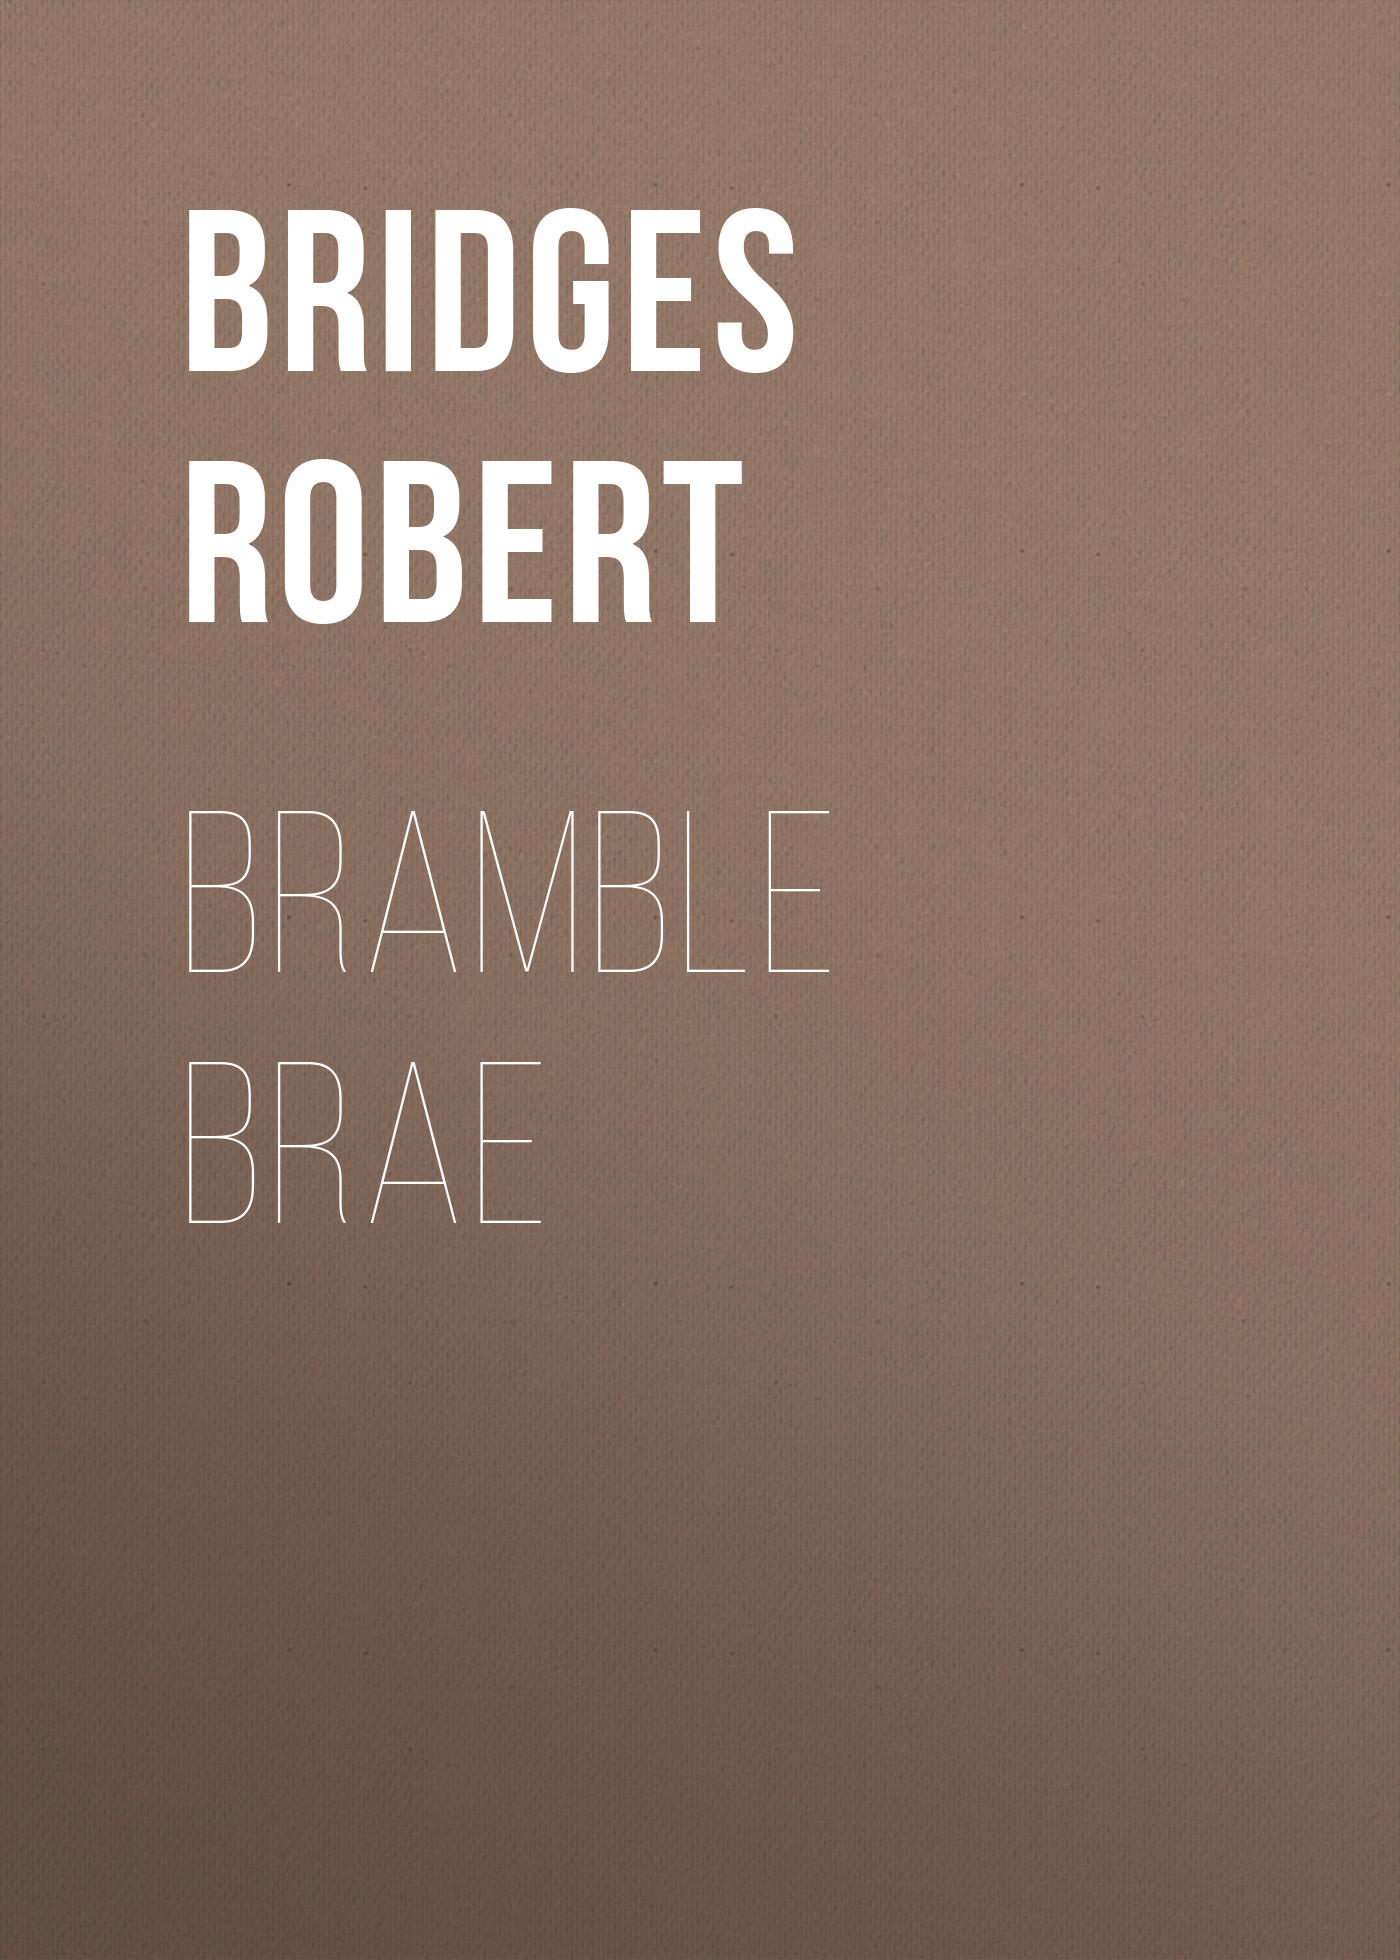 Книга Bramble Brae из серии , созданная Robert Bridges, может относится к жанру Зарубежная классика, Зарубежная старинная литература. Стоимость электронной книги Bramble Brae с идентификатором 35007977 составляет 0 руб.